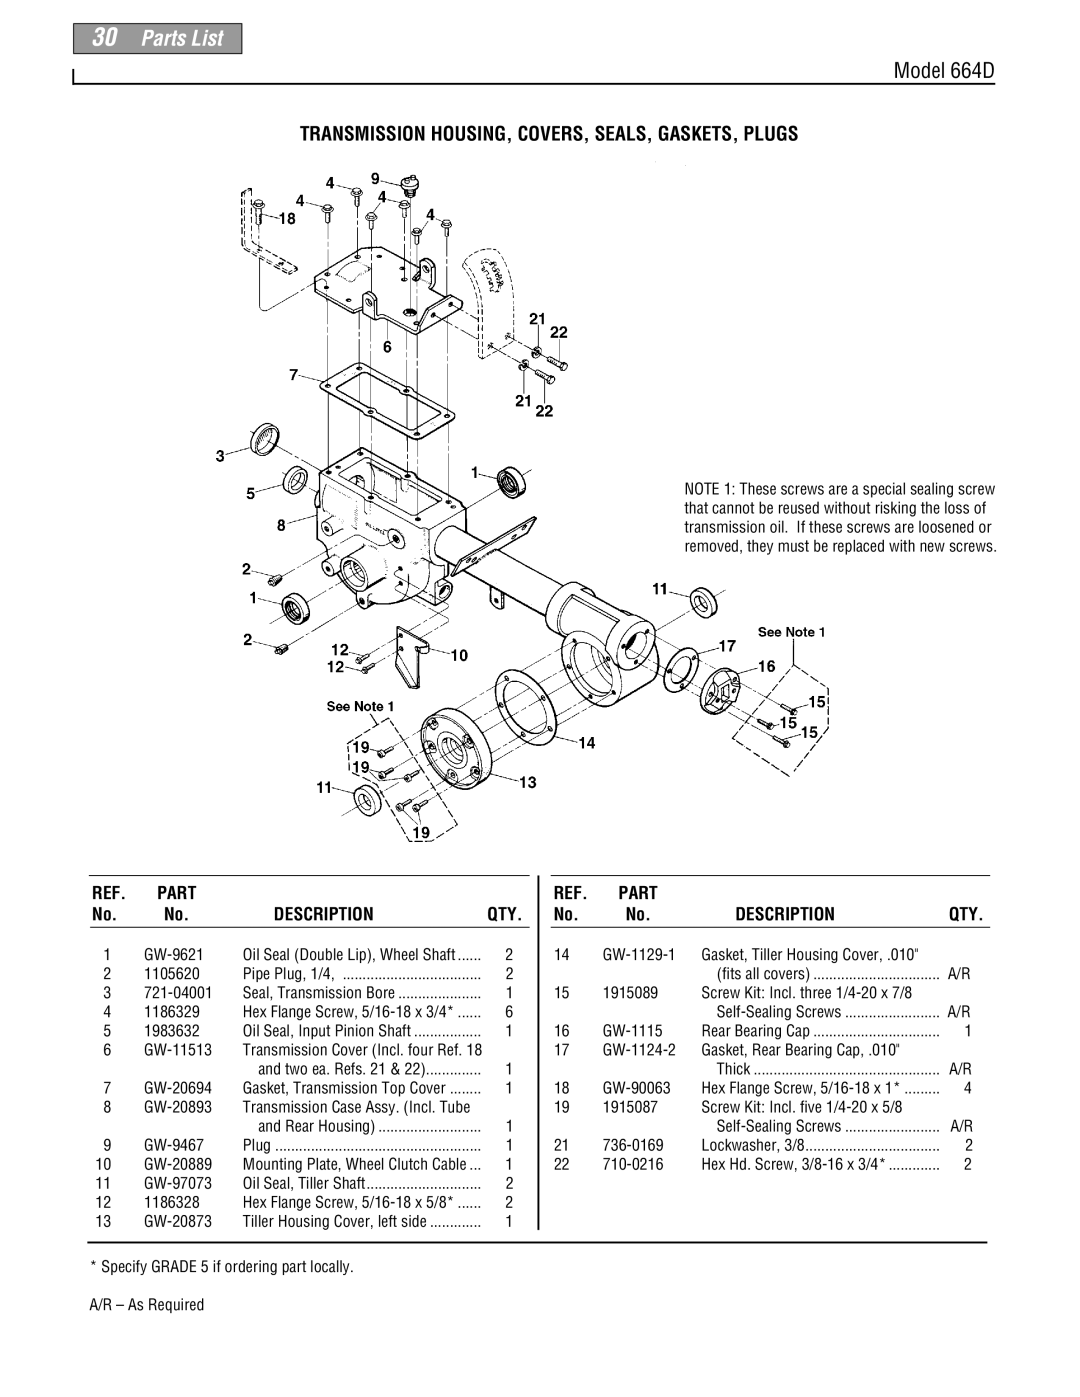 Troy-Bilt 664D-Pony manual Parts List, Transmission Housing, Covers, Seals, Gaskets, Plugs, Model 664D, Description 